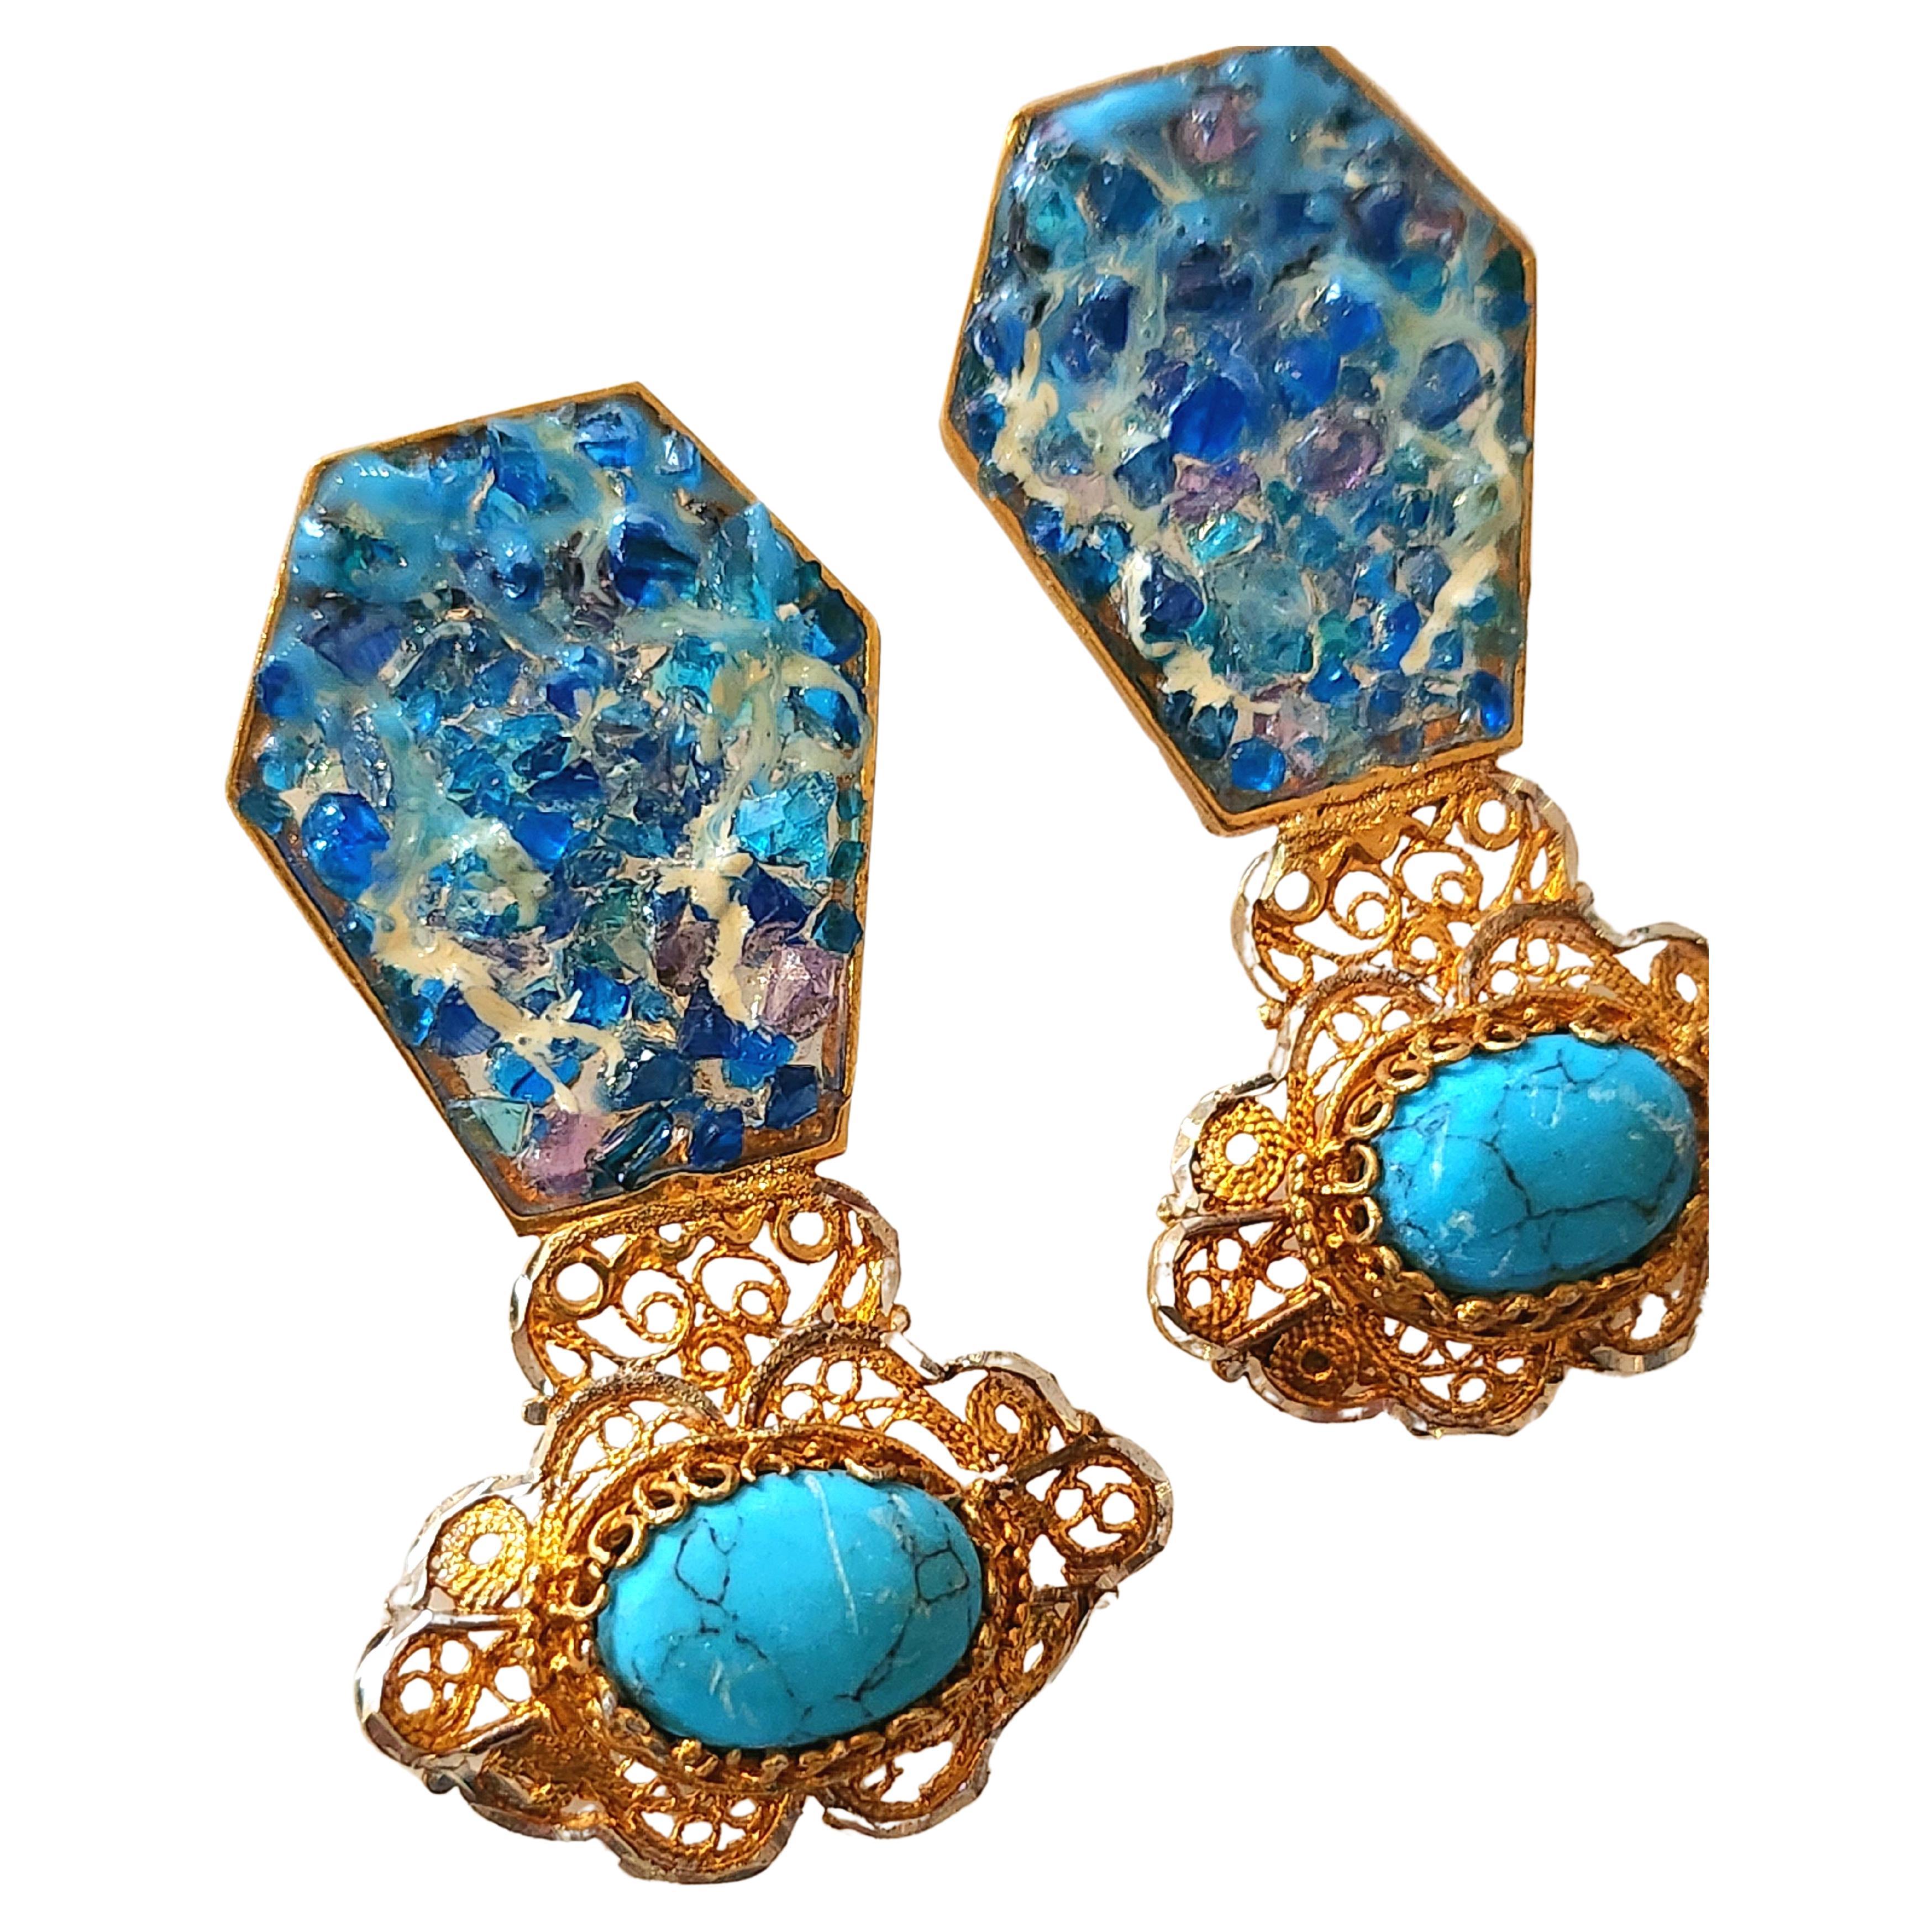 Contemporary Large Silber handgefertigte Ohrringe vergoldet mit 750k Gold mit bunten blauen Plaque ajoure Emaille-Technik und terqouse Steine in byzantinischen Stil Ohrringe Länge 5,5 cm 